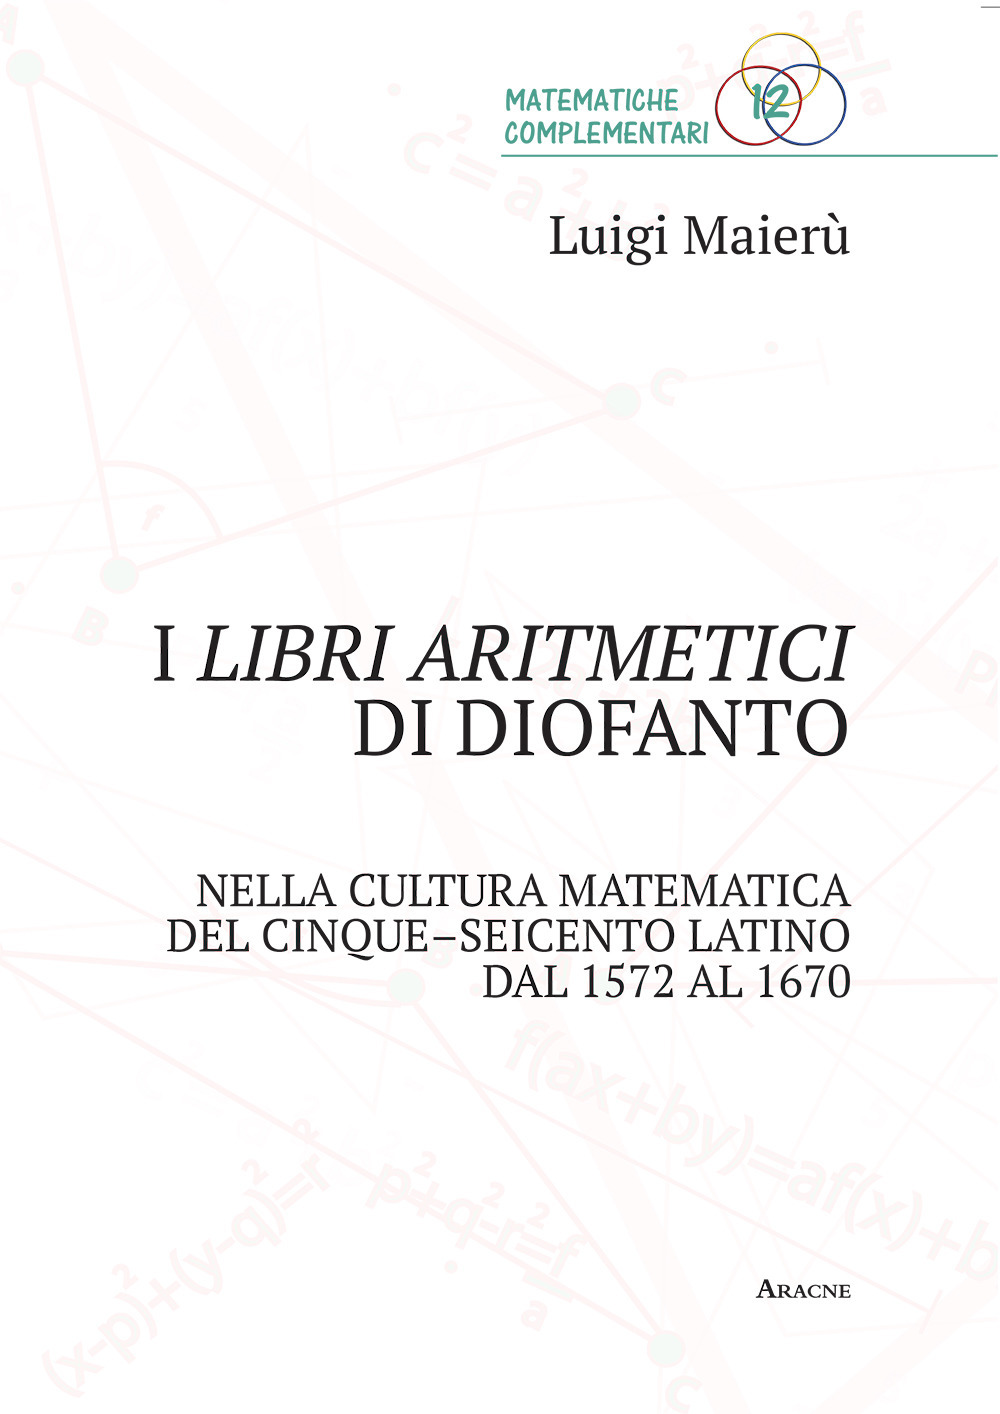 I libri aritmetici di Diofanto nella cultura matematica del Cinque-Seicento latino dal 1572 al 1670